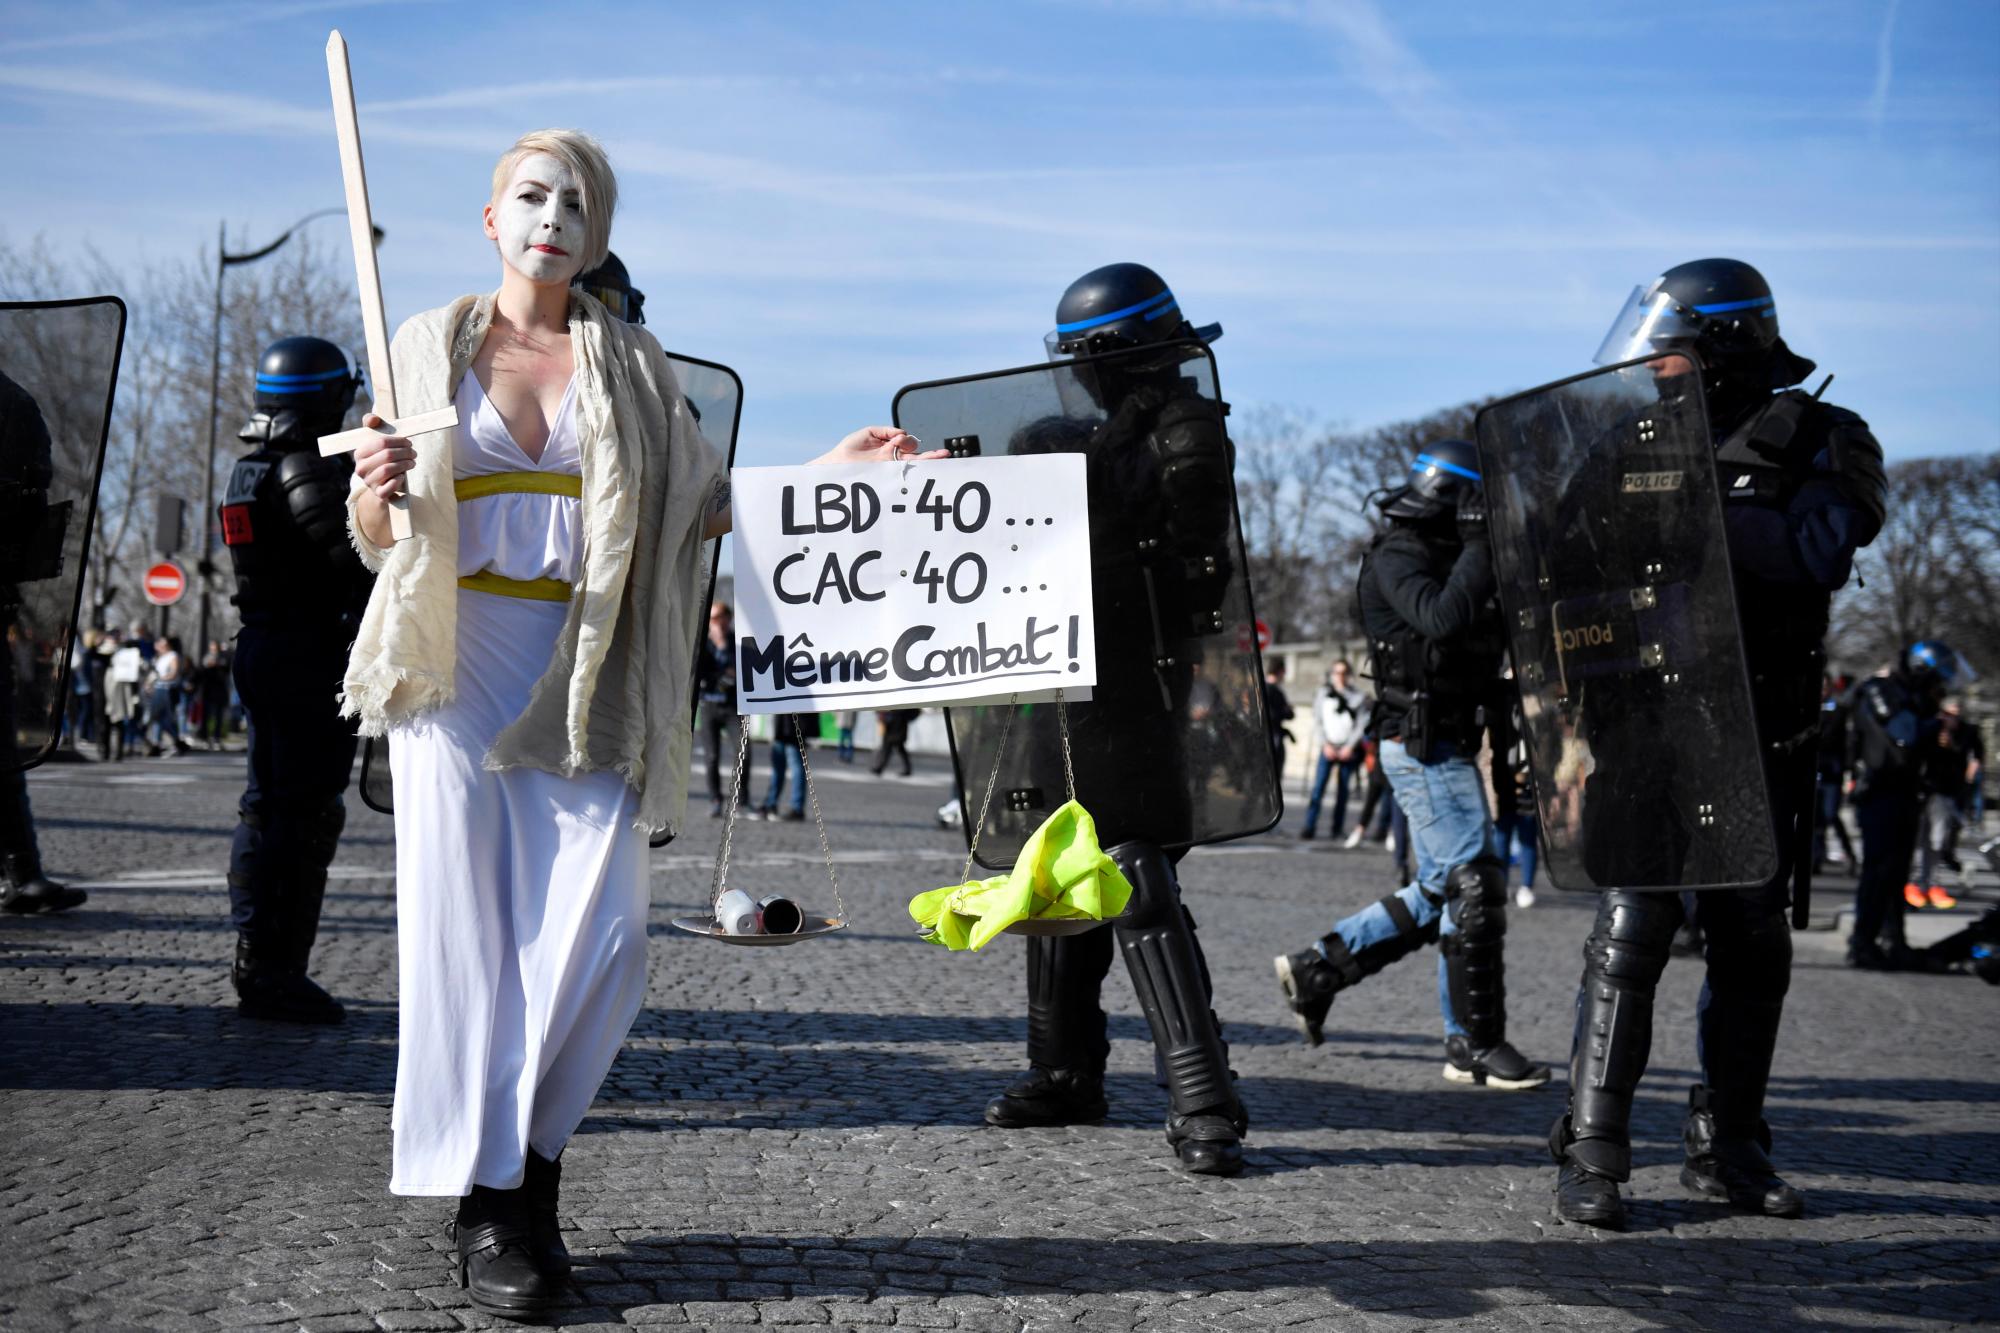 París (Francia), 16/02/2019.- Un manifestante del movimiento ‘Gilets Jaunes’ (chalecos amarillos) sostiene un cartel ‘LBD-40 ... CAC-40 ... La misma lucha’ durante el ‘Acto XIV’ manifestación (la 14a protesta nacional consecutiva en un sábado) en París, Francia, 16 de febrero de 2019. El llamado ‘Gilets Jaunes’ es un movimiento de protesta popular con partidarios de un amplio espectro del espectro político, que originalmente comenzó con la protesta a través de La nación a finales de 2018 contra los altos precios del combustible.